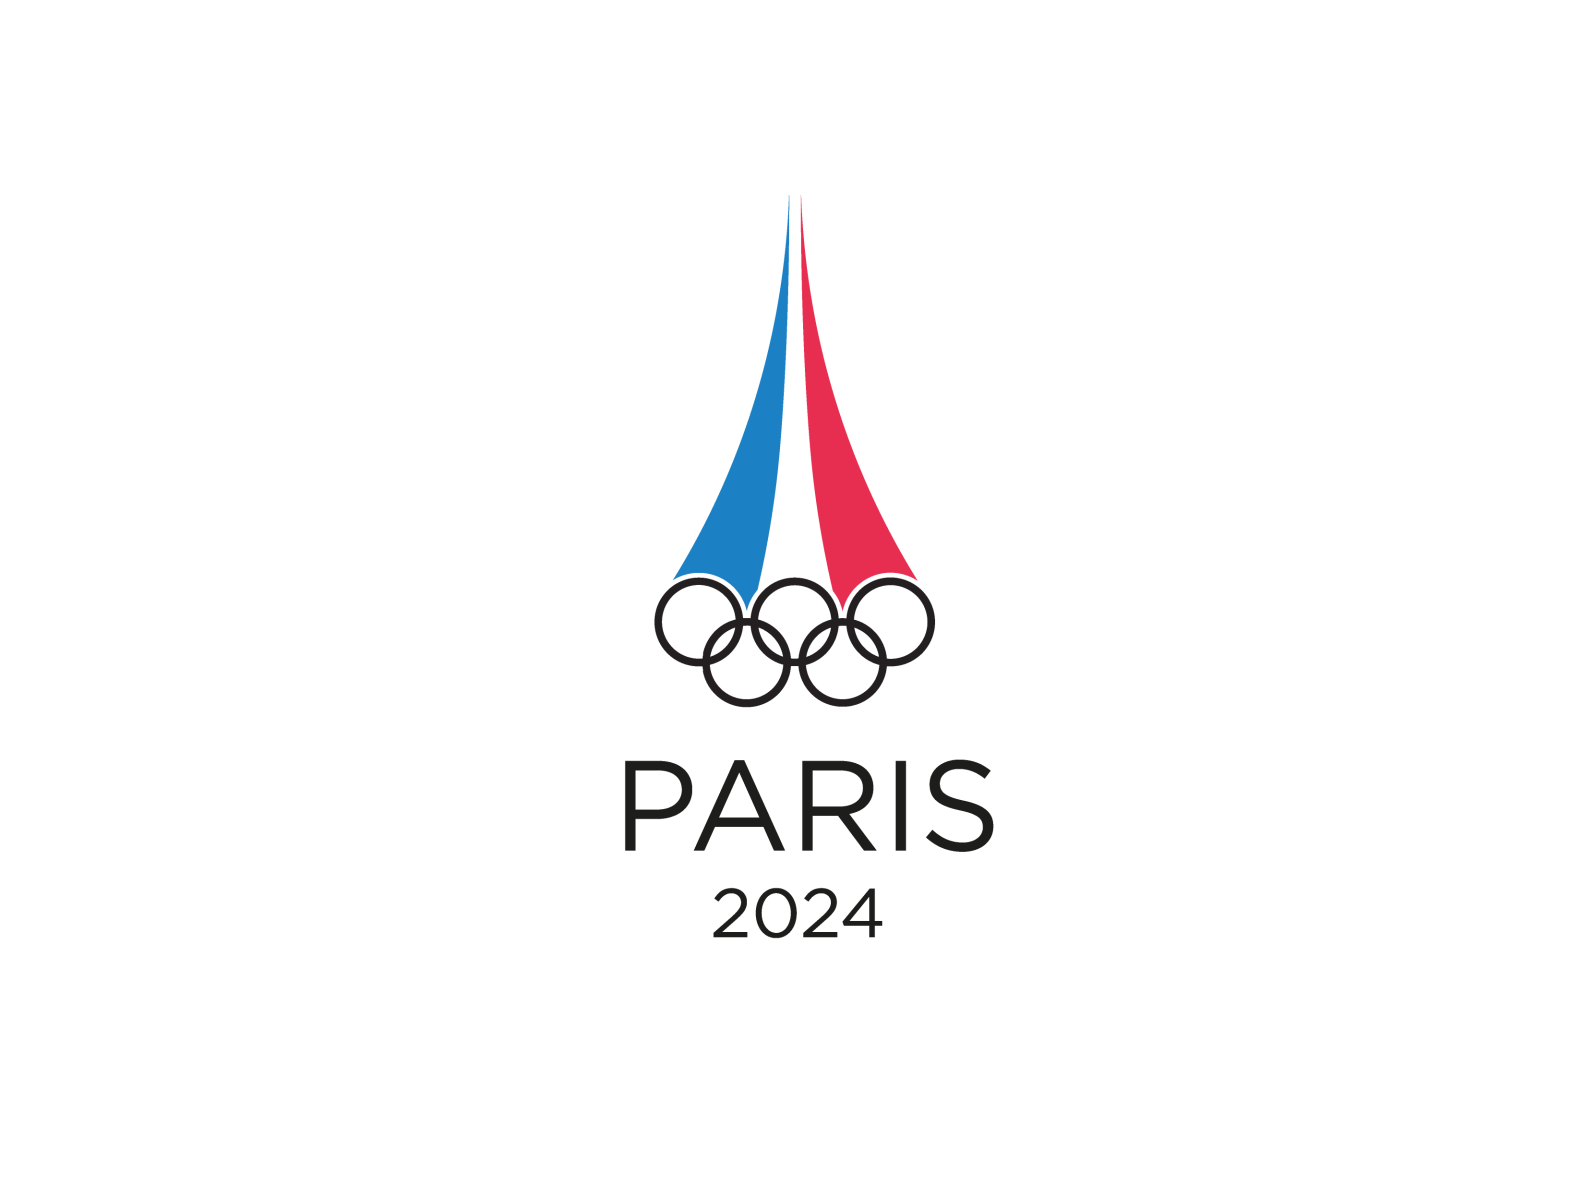 Гто 2024г. Олимпийские игры в Париже 2024. Paris 2024 логотип. Paris 2024 Olympics logo.